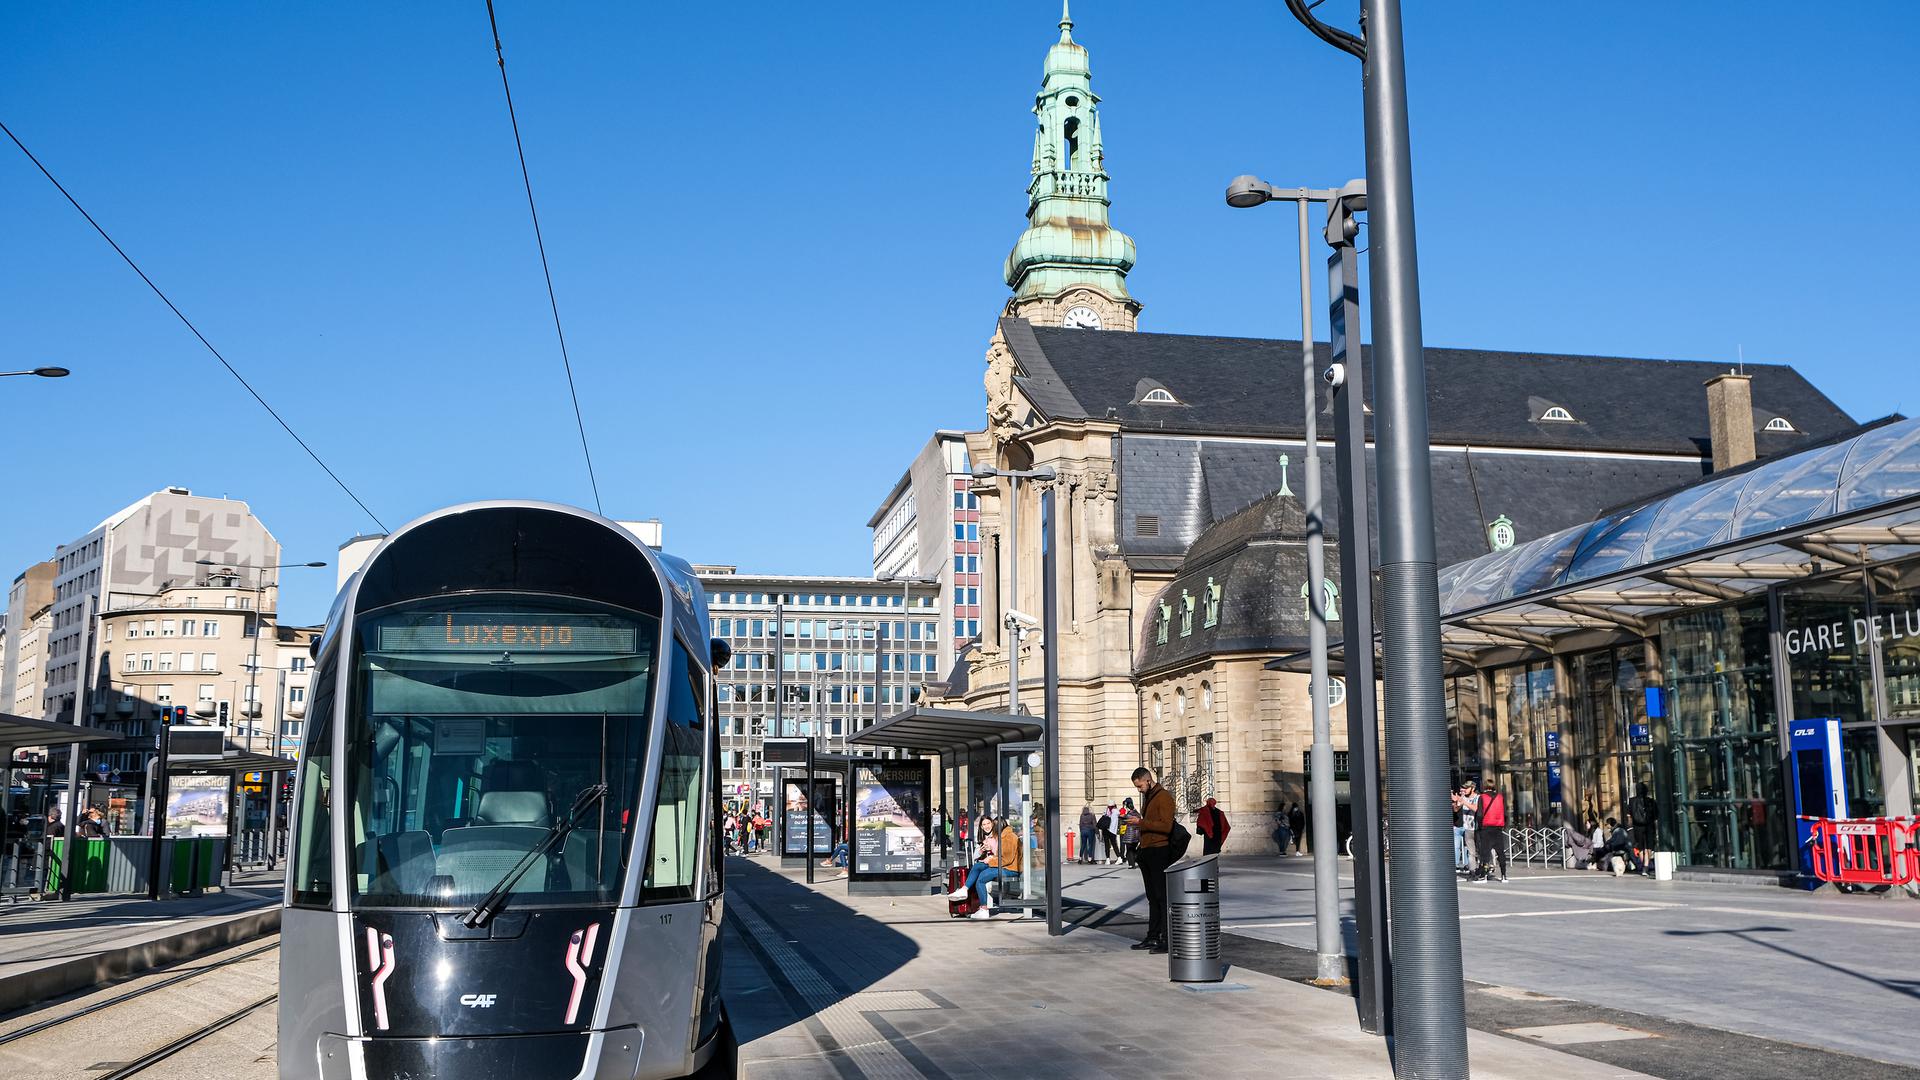 Le tram à quai à la station de la gare centrale, et à destination de Luxexpo, actuel terminus du réseau.